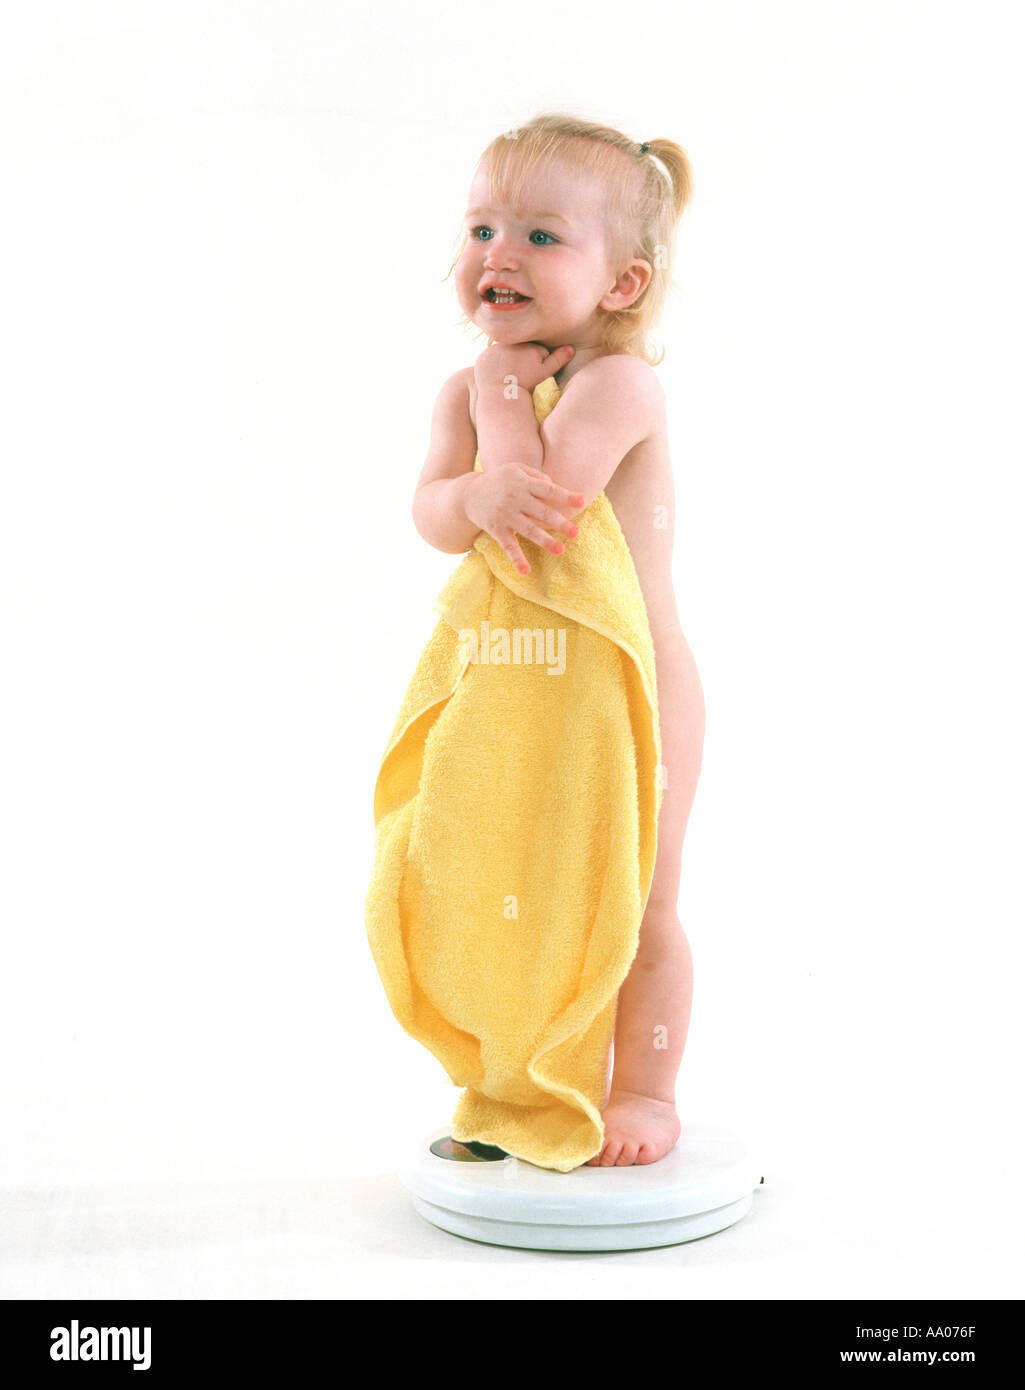 Baby girl permanente sulla bilancia da bagno con grande asciugamano giallo Foto Stock